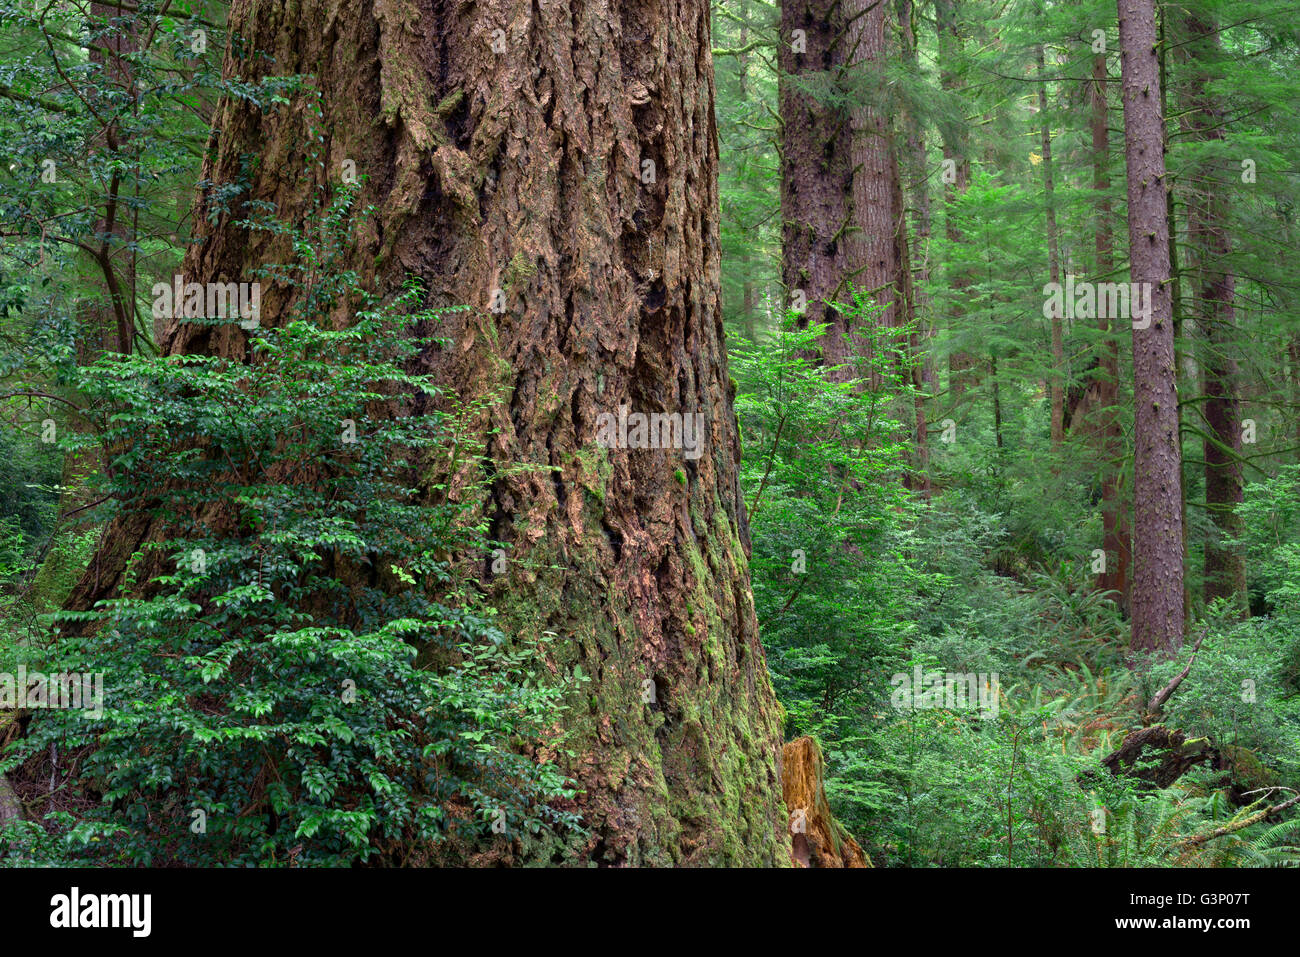 Stati Uniti d'America, Oregon, Siuslaw National Forest, Cape Perpetua Scenic Area, enorme tronco di abete di Douglas e minore Sitka Spruce nella foresta. Foto Stock